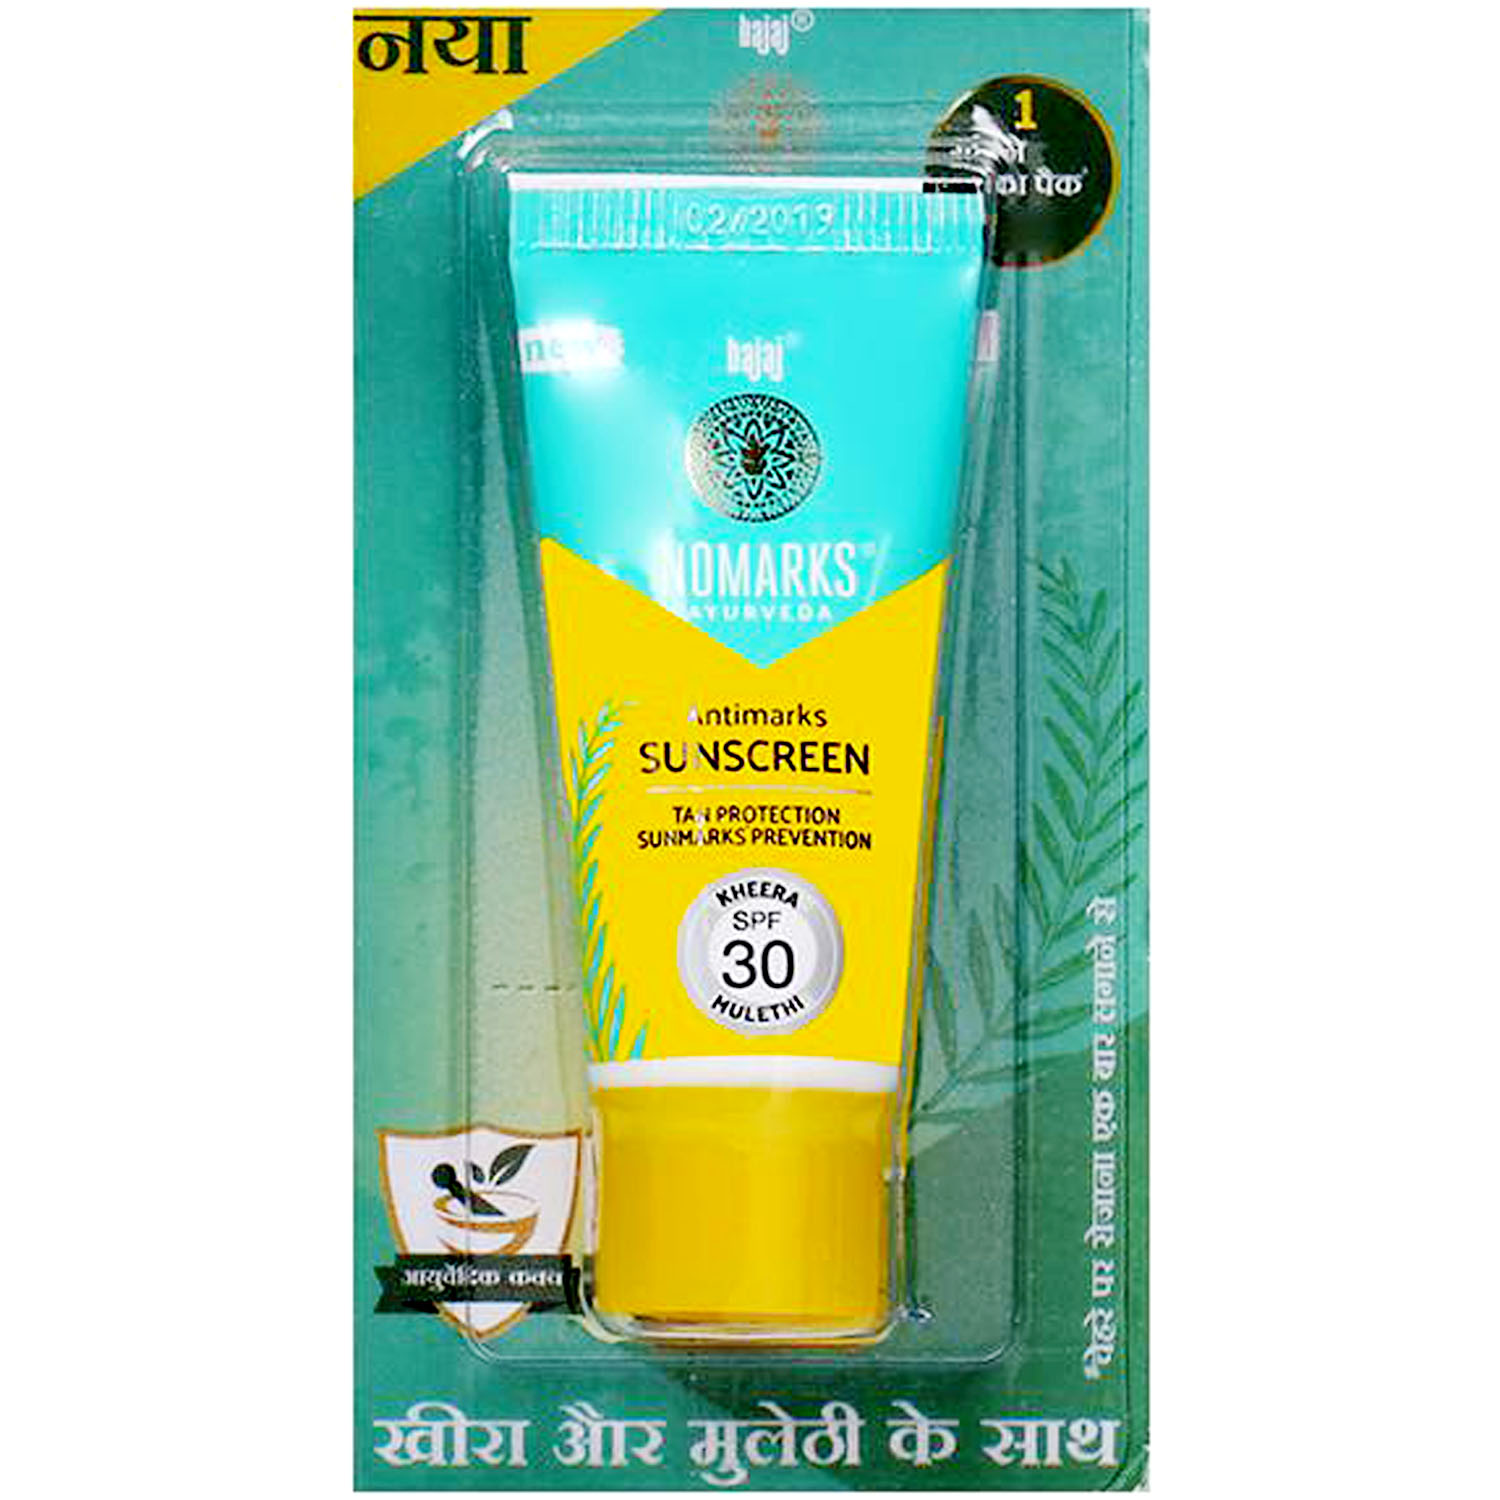 Buy Bajaj Nomarks Antimarks Sunscreen SPF 30, 15 gm Online